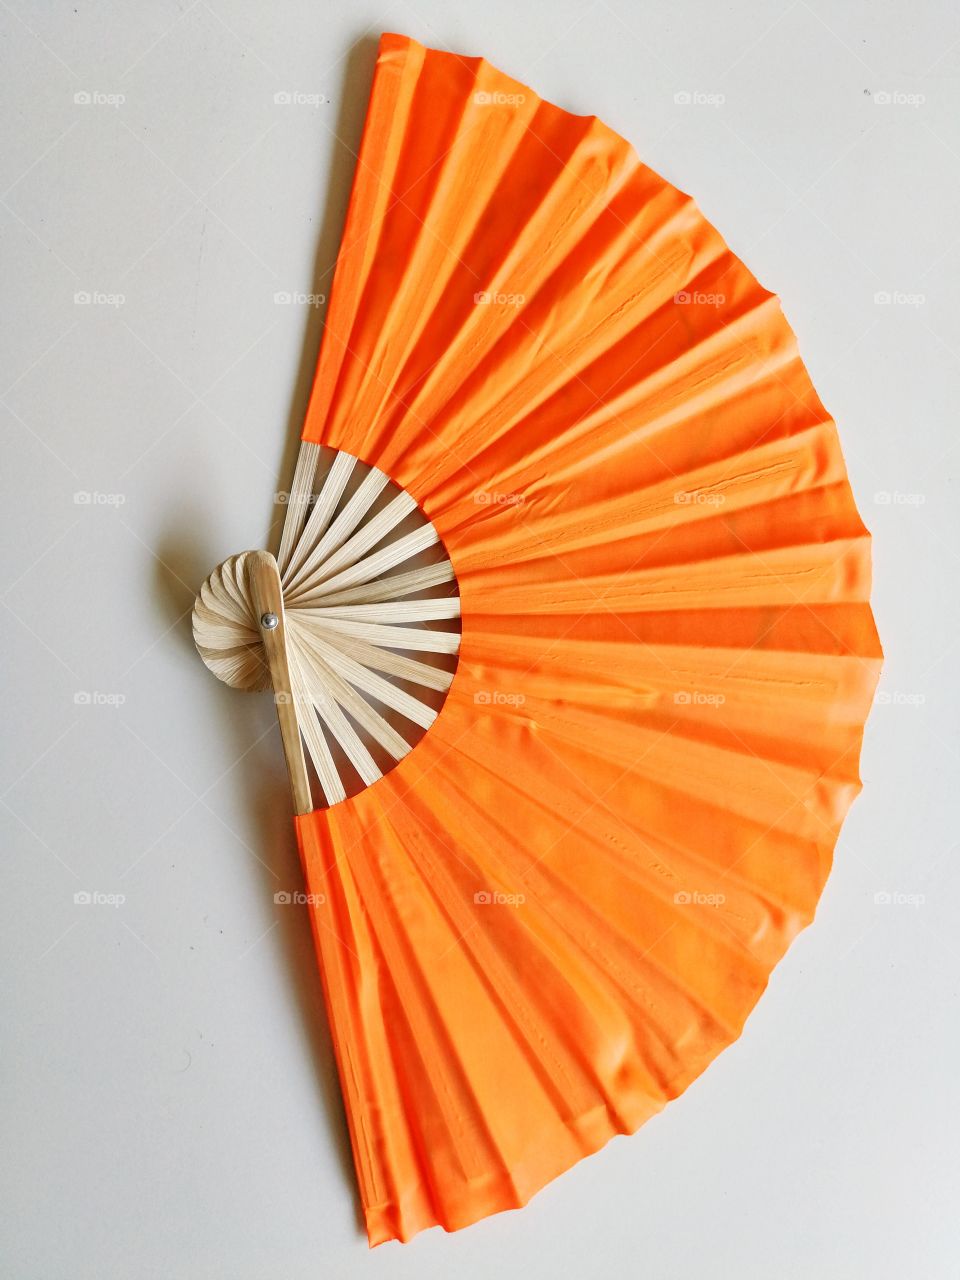 Orange handmade fan